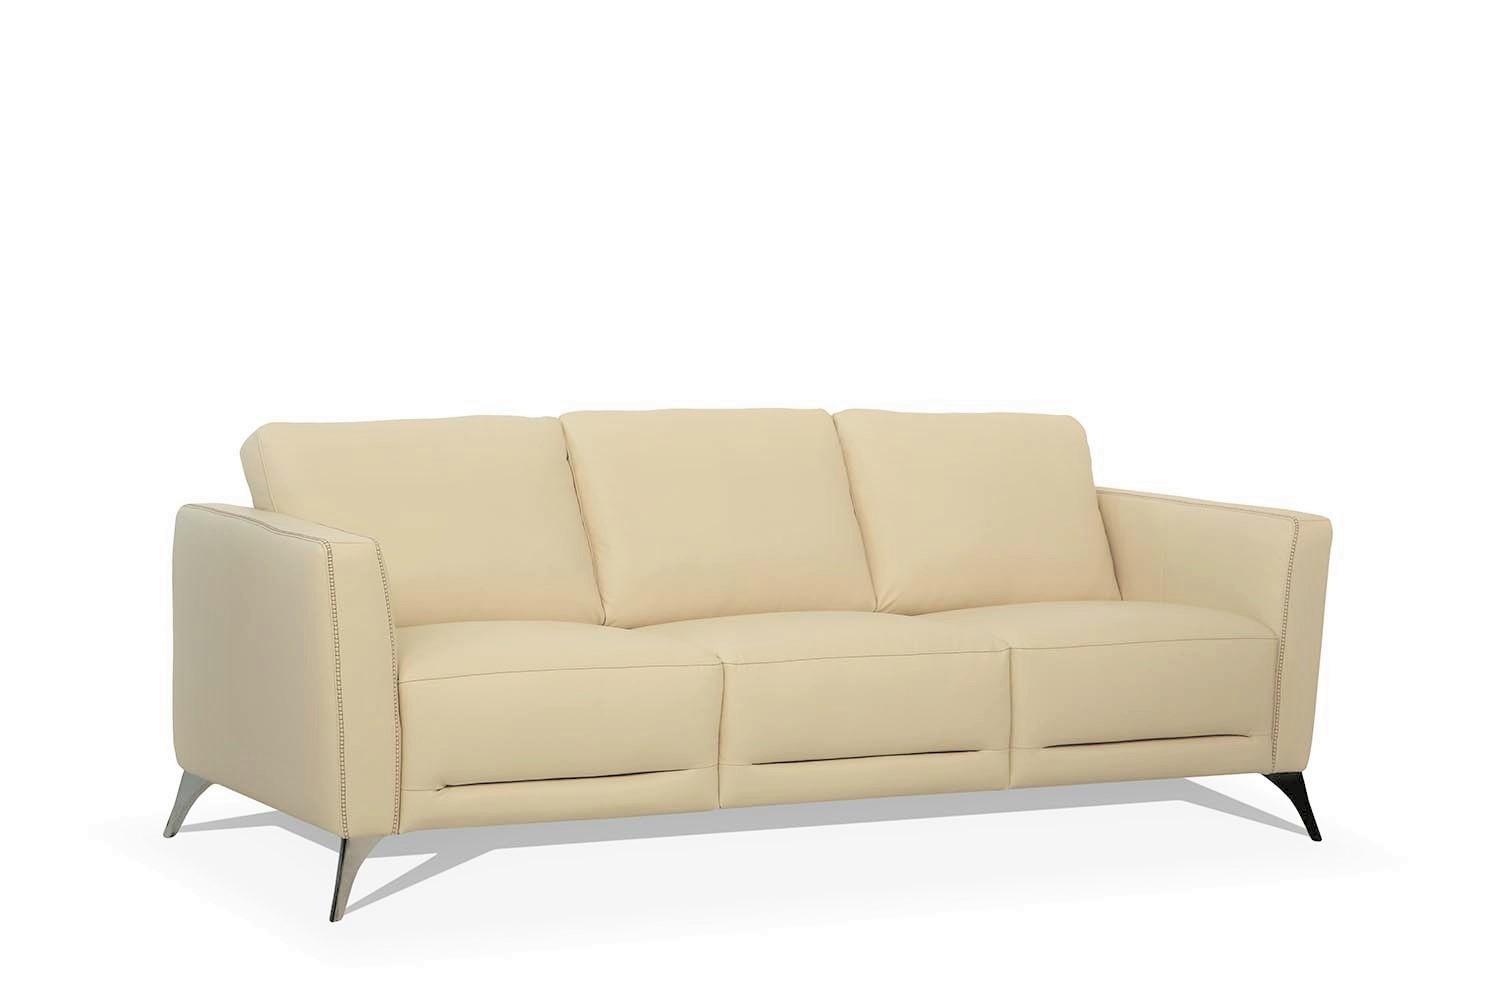 Transitional Sofa Malaga 55005 in Cream Leather